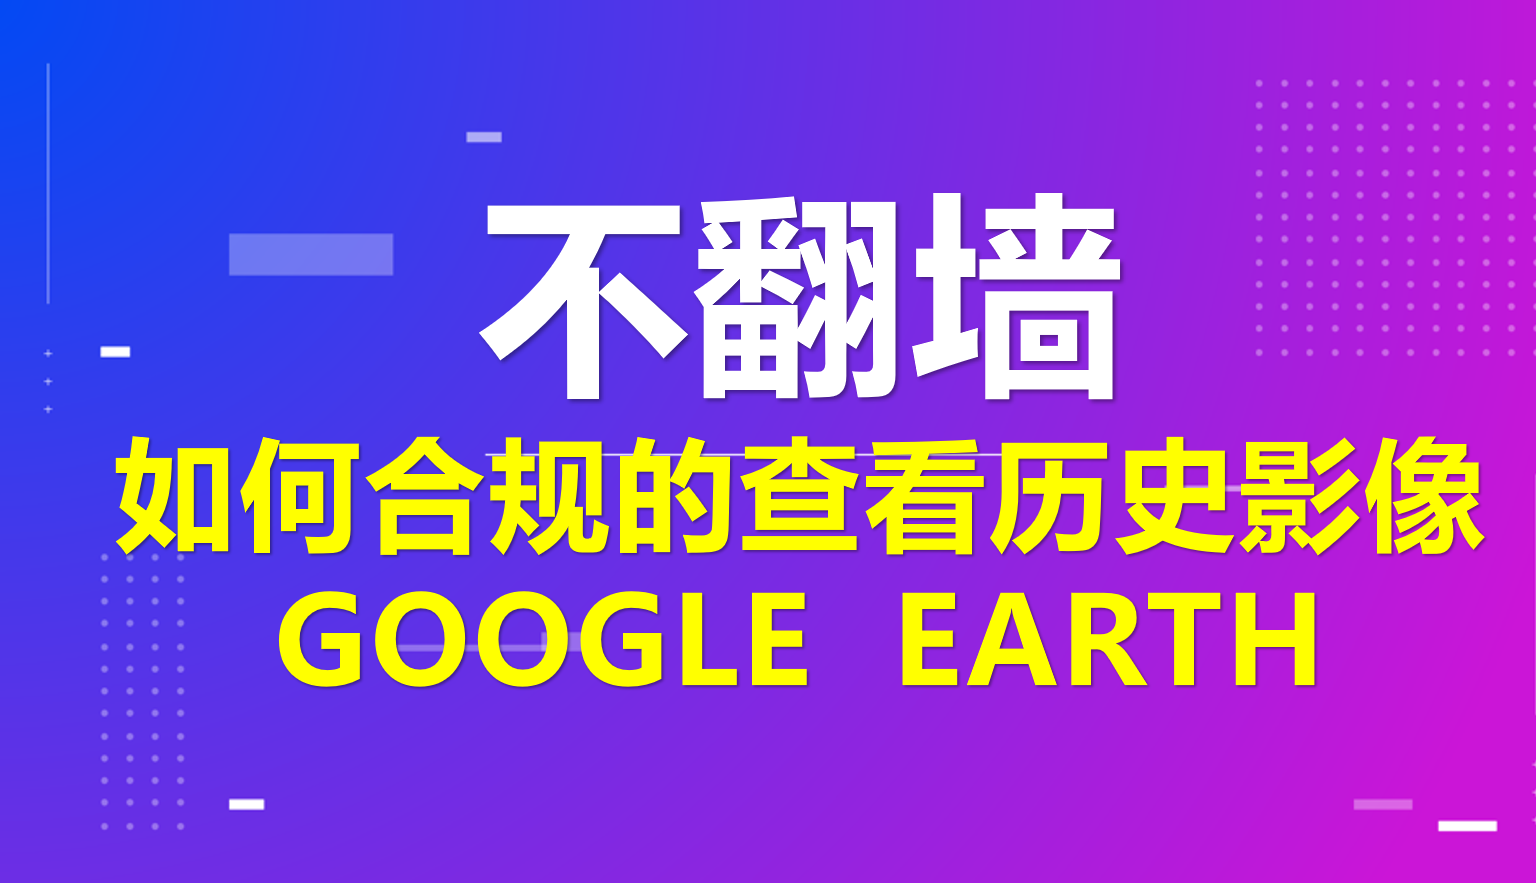 GEE谷歌地球修复工具修复谷歌地球查看历史